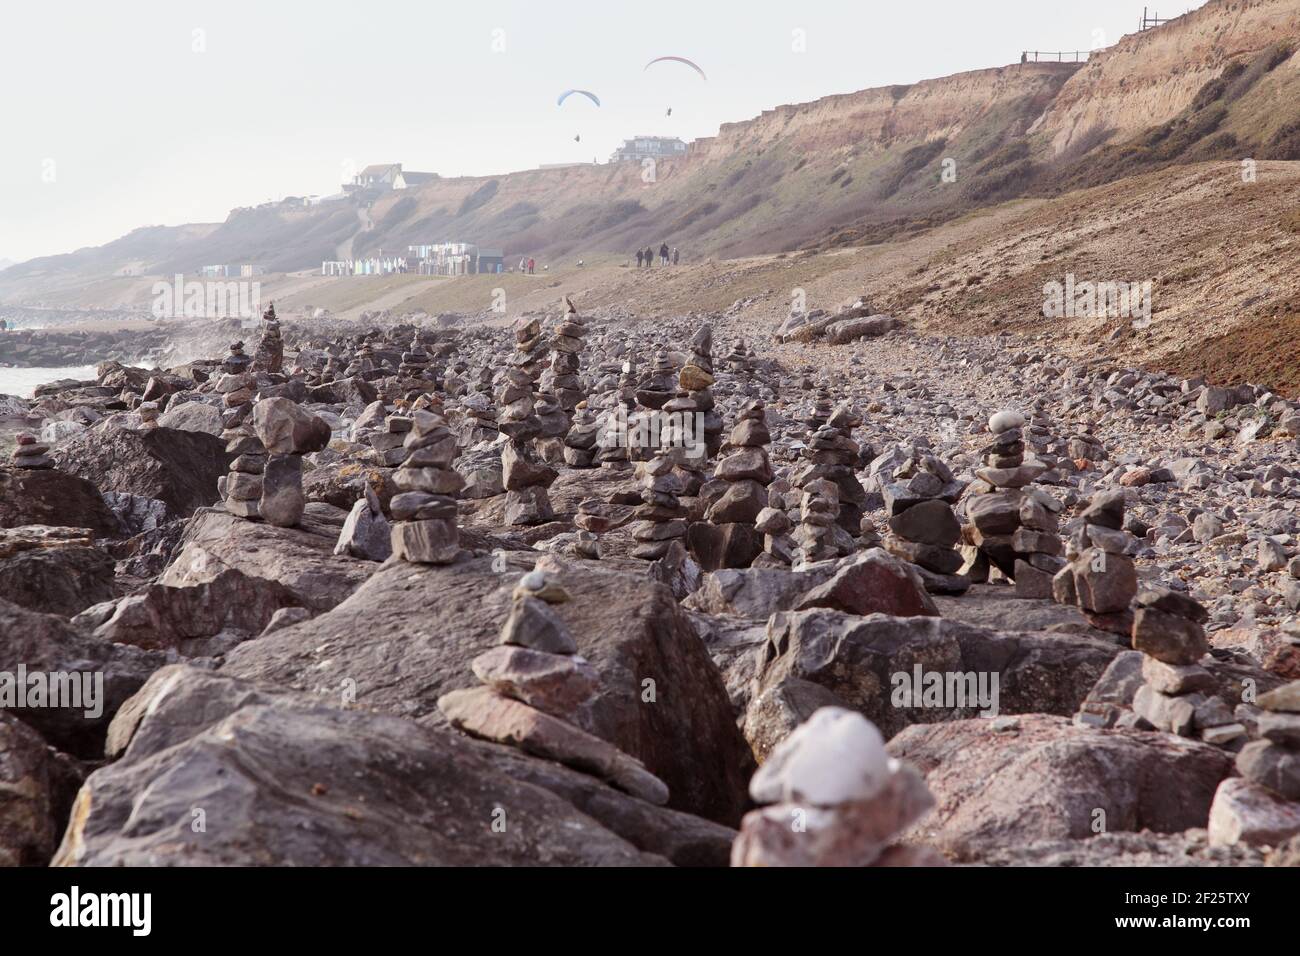 Spiaggia costa con centinaia di pietre equilibranti o rocce bilanciate impilate / impilate come cairns dal pubblico a Barton on sul mare durante la crisi Covid. Foto Stock